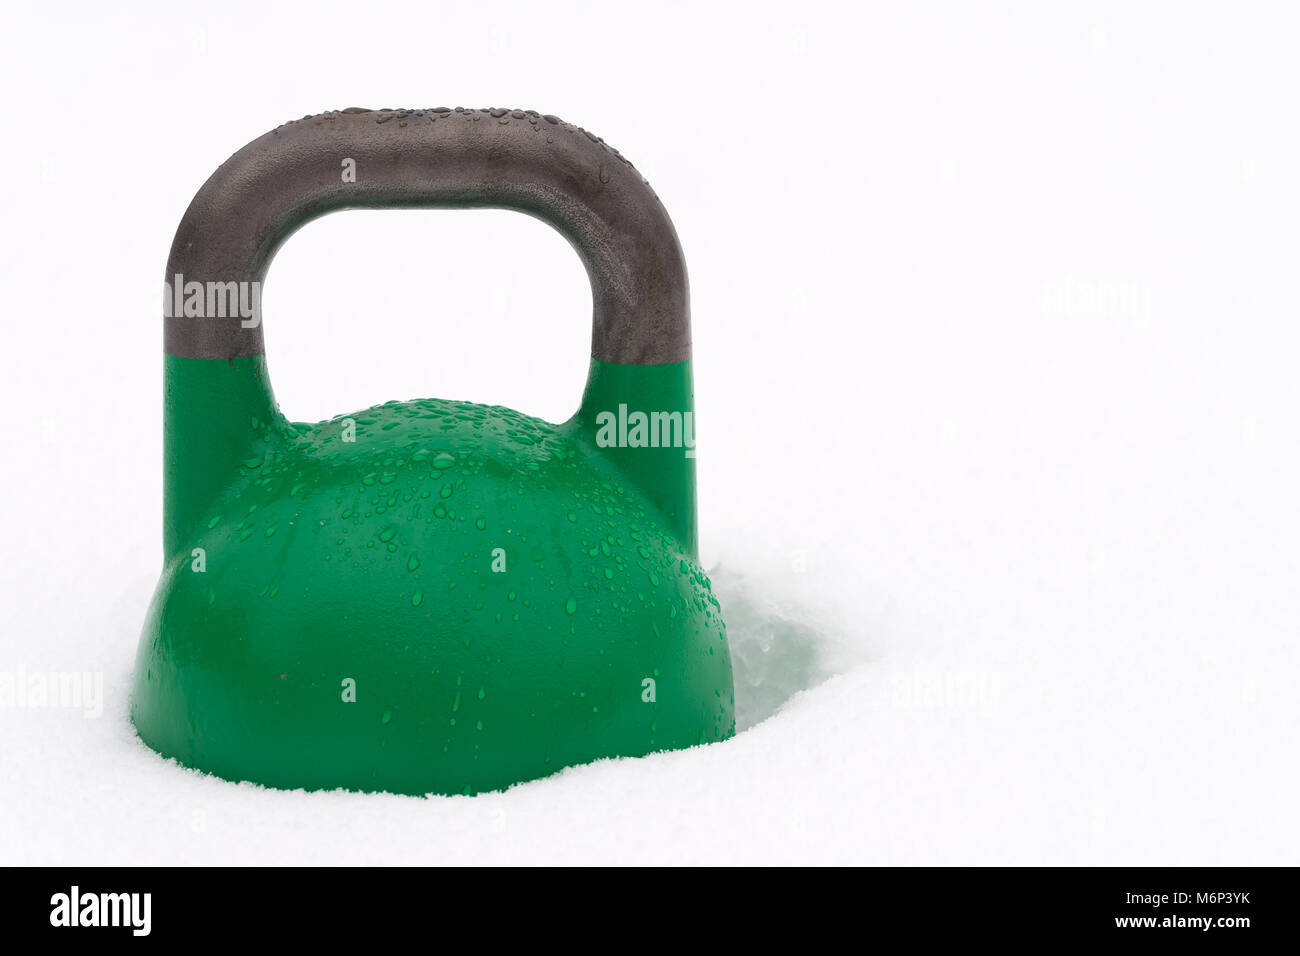 Poids kettlebell formation verte couverte de gouttelettes d'eau à  l'extérieur dans la neige. Copie potentiel espace à droite de kettlebell  Photo Stock - Alamy